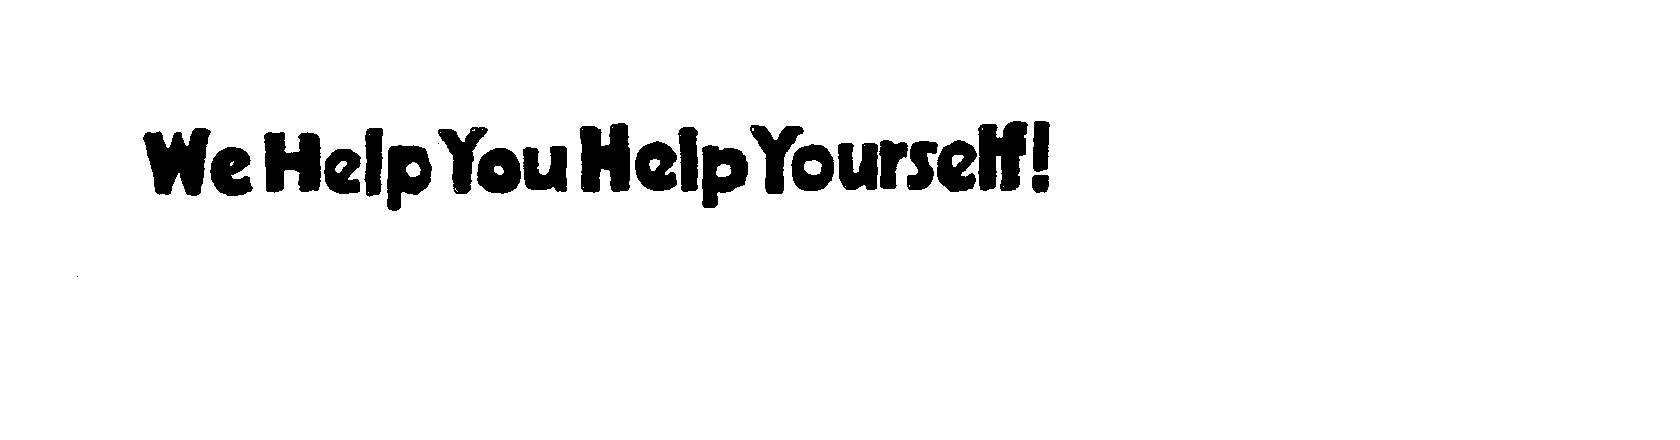  WE HELP YOU HELP YOURSELF!